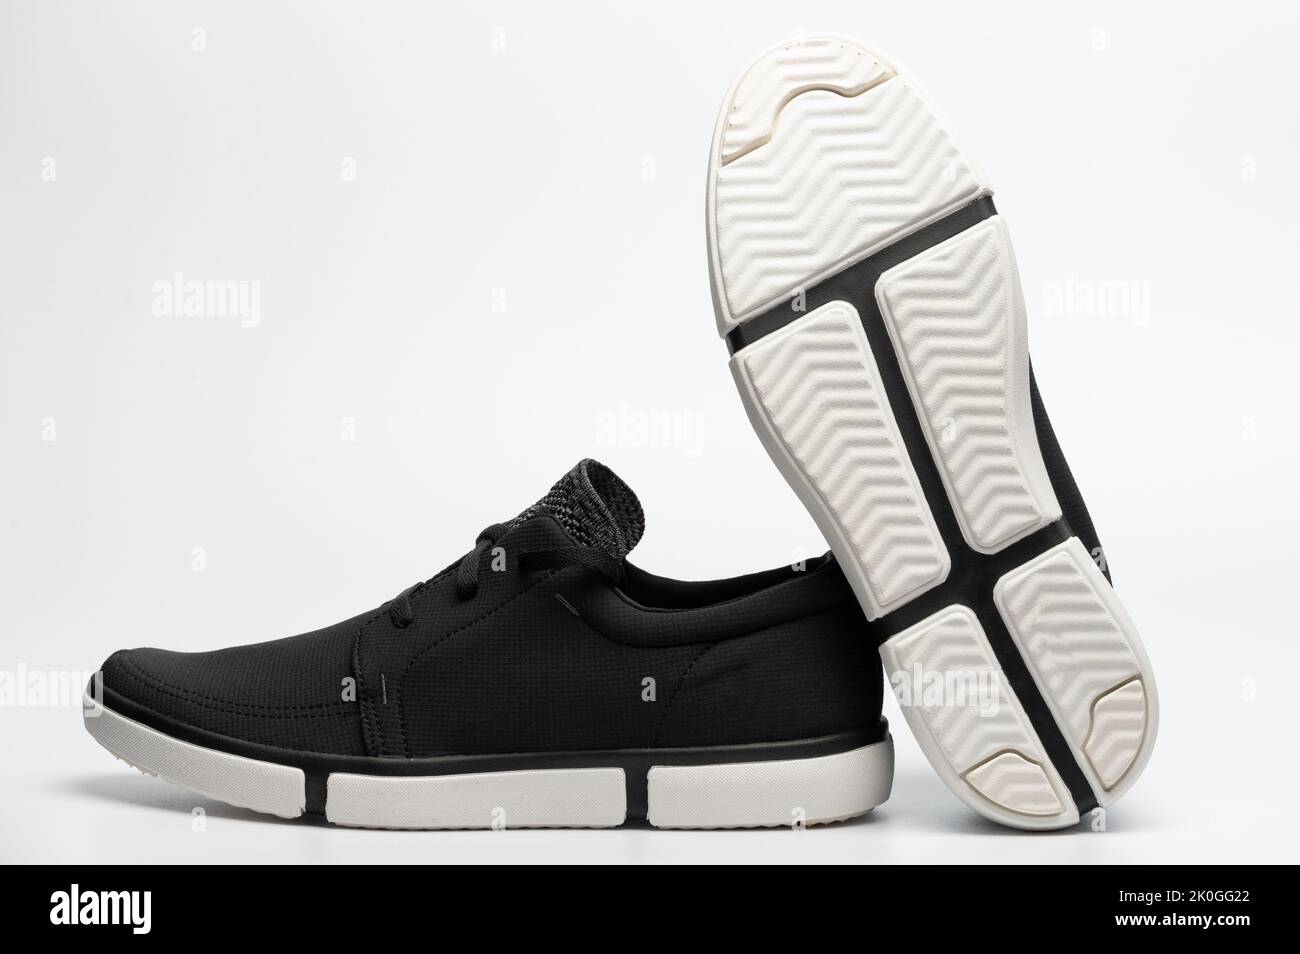 Neue bequeme schwarze Sneaker Schuhe mit weißer Sohle isoliert Stockfoto